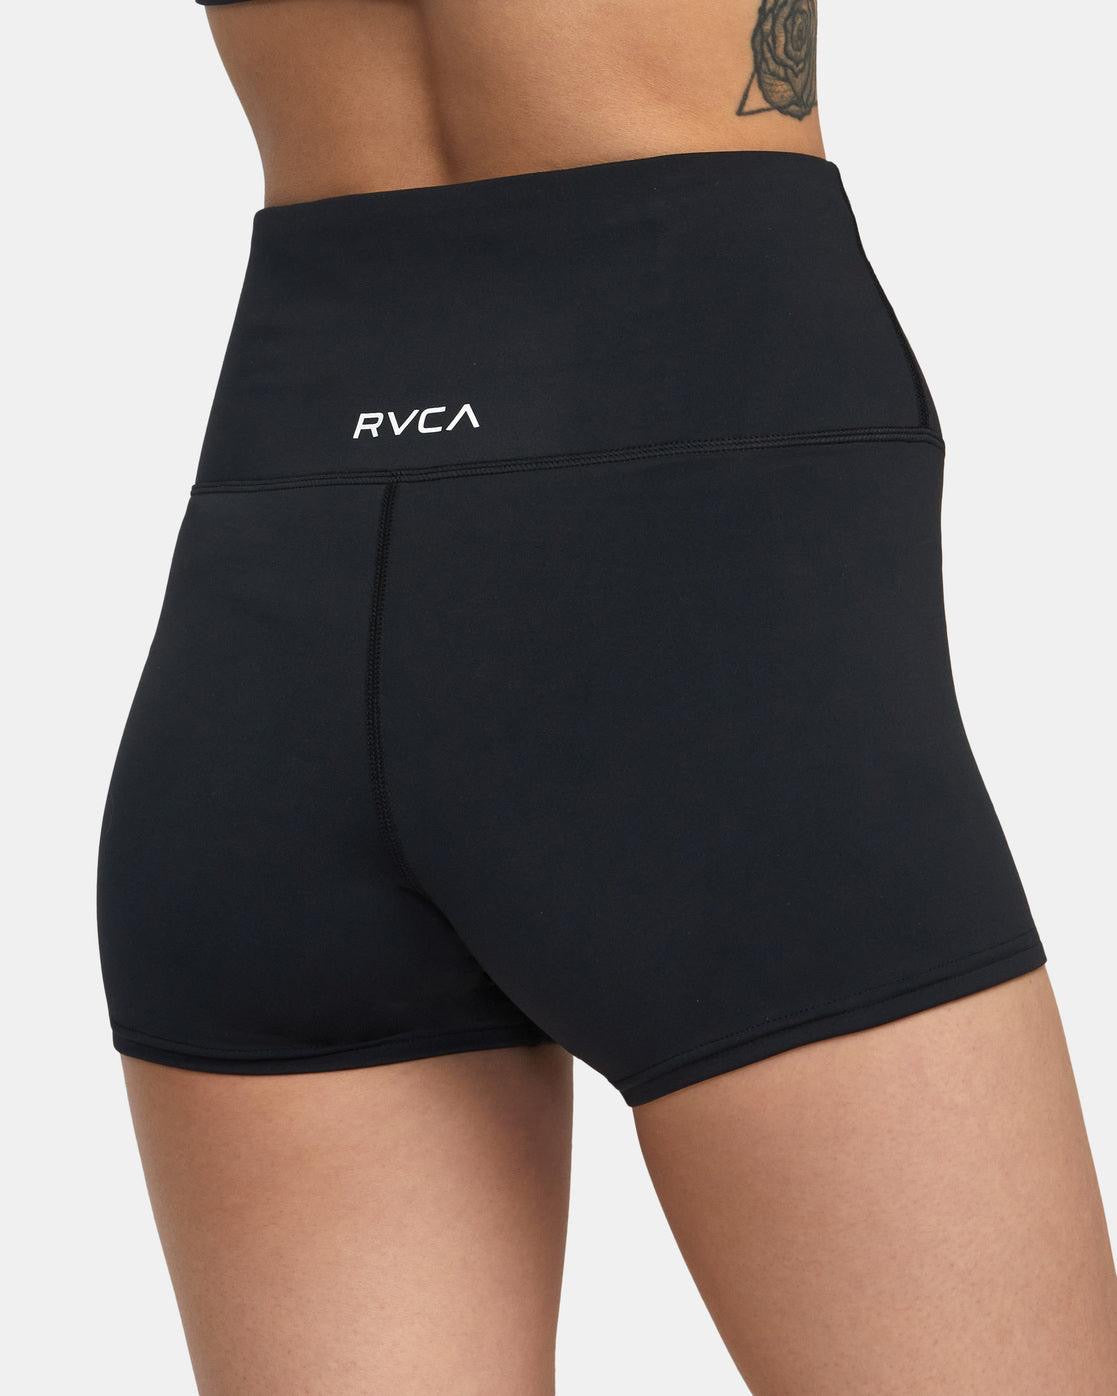 RVCA Women’s Short Workout Shorts